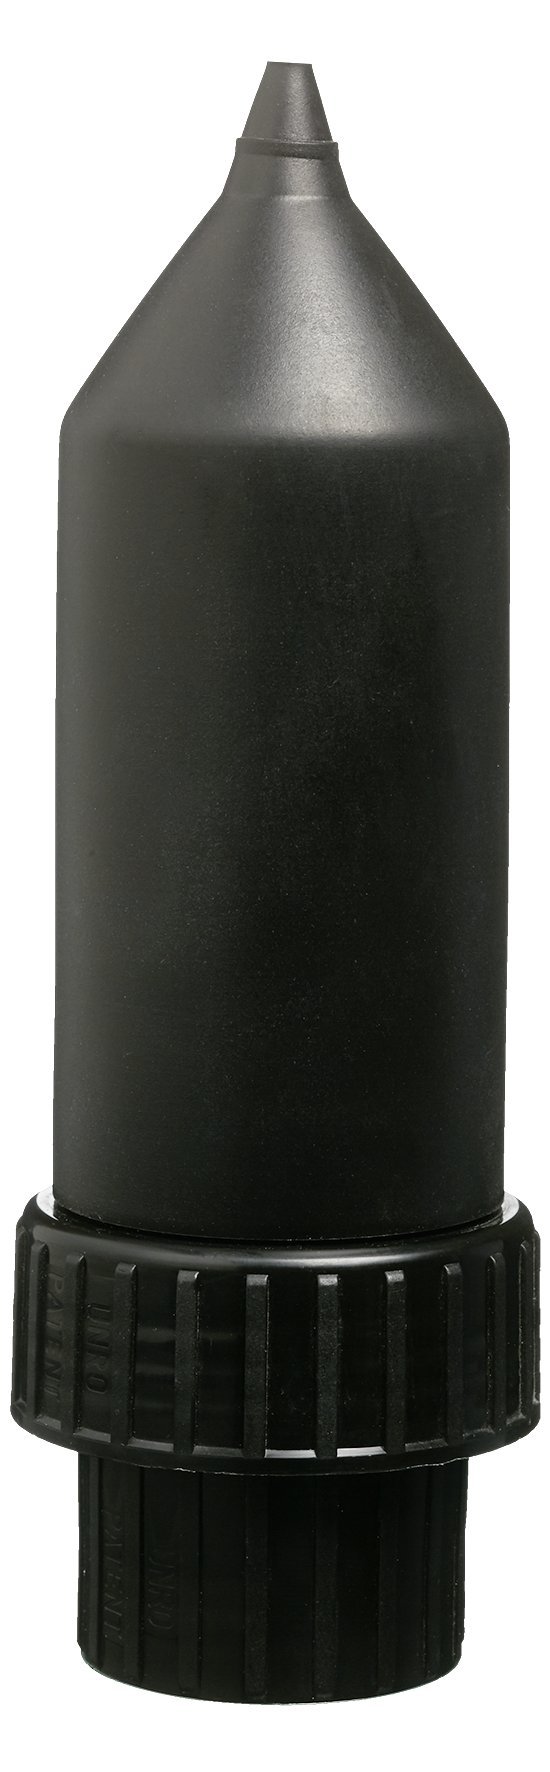 SONAX Dispenser für 5 Liter PROFILINE (1 Stück) einfaches, tropffreies Dosieren in kleinere Handlingsgebinde | Art-Nr. 04962410 von SONAX